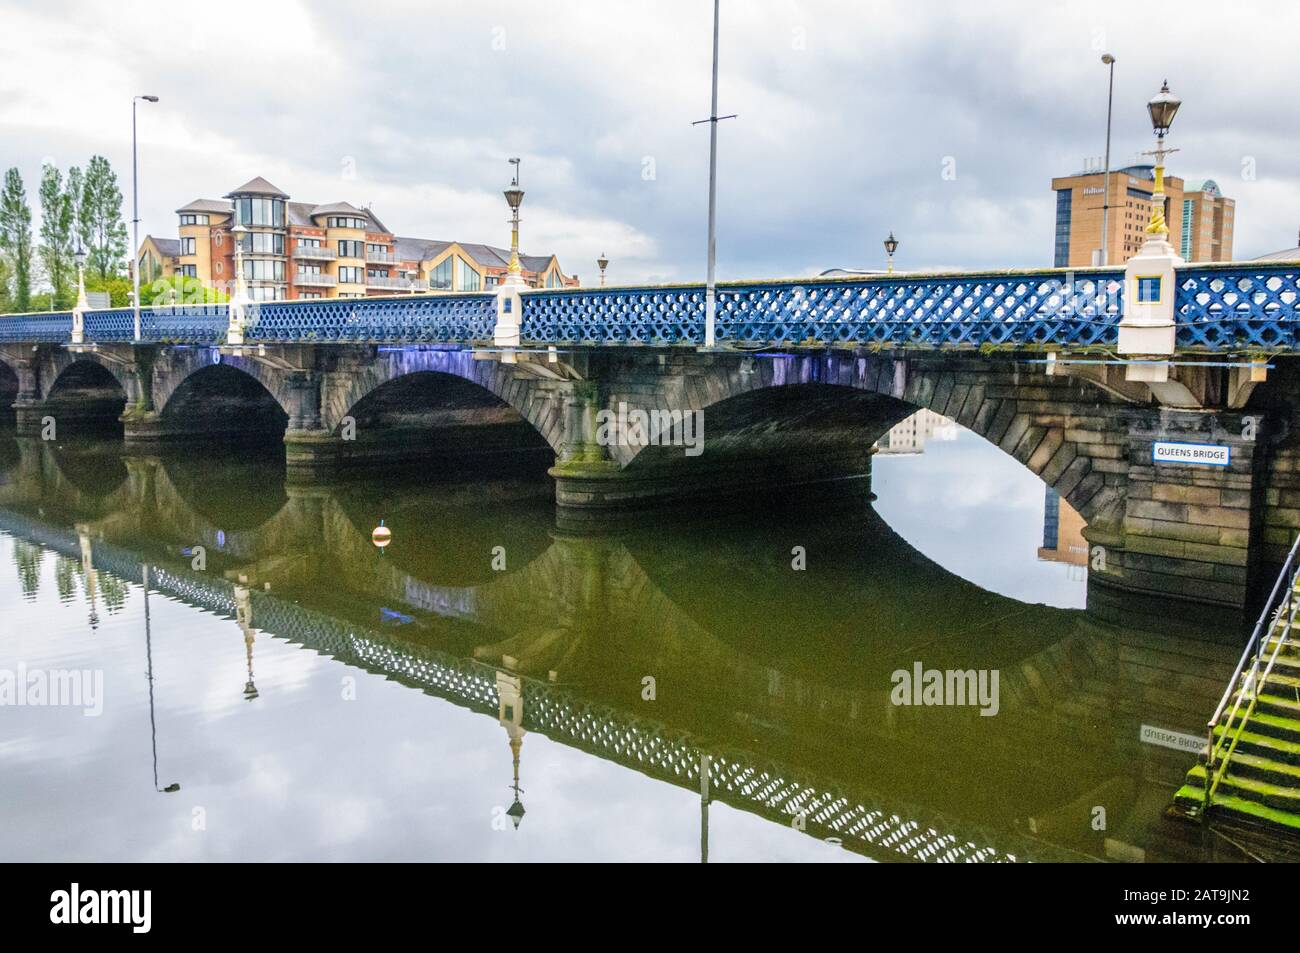 Queen's Bridge over River Lagan in Belfast, Northern Ireland with bridge reflected in the water. Stock Photo